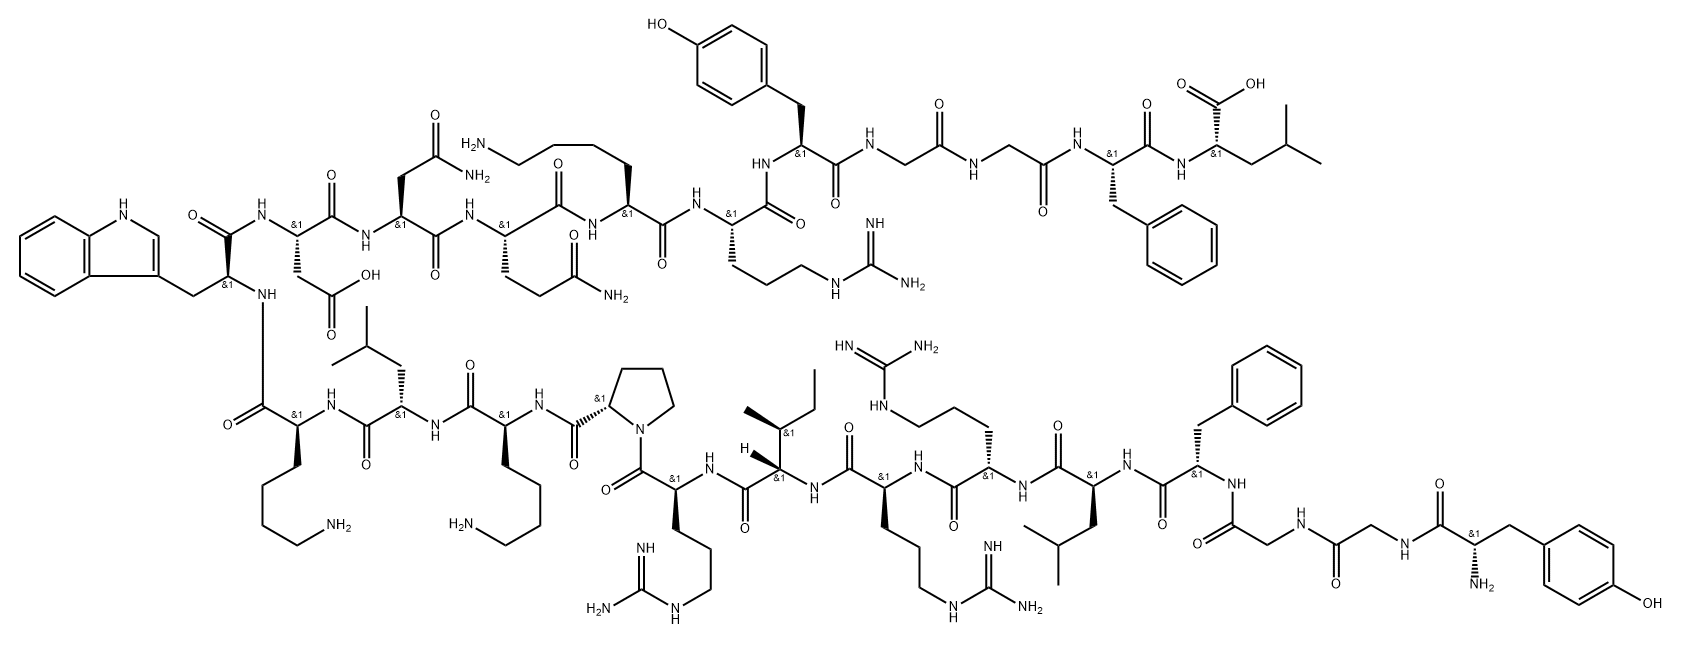 디노르핀(1-24)